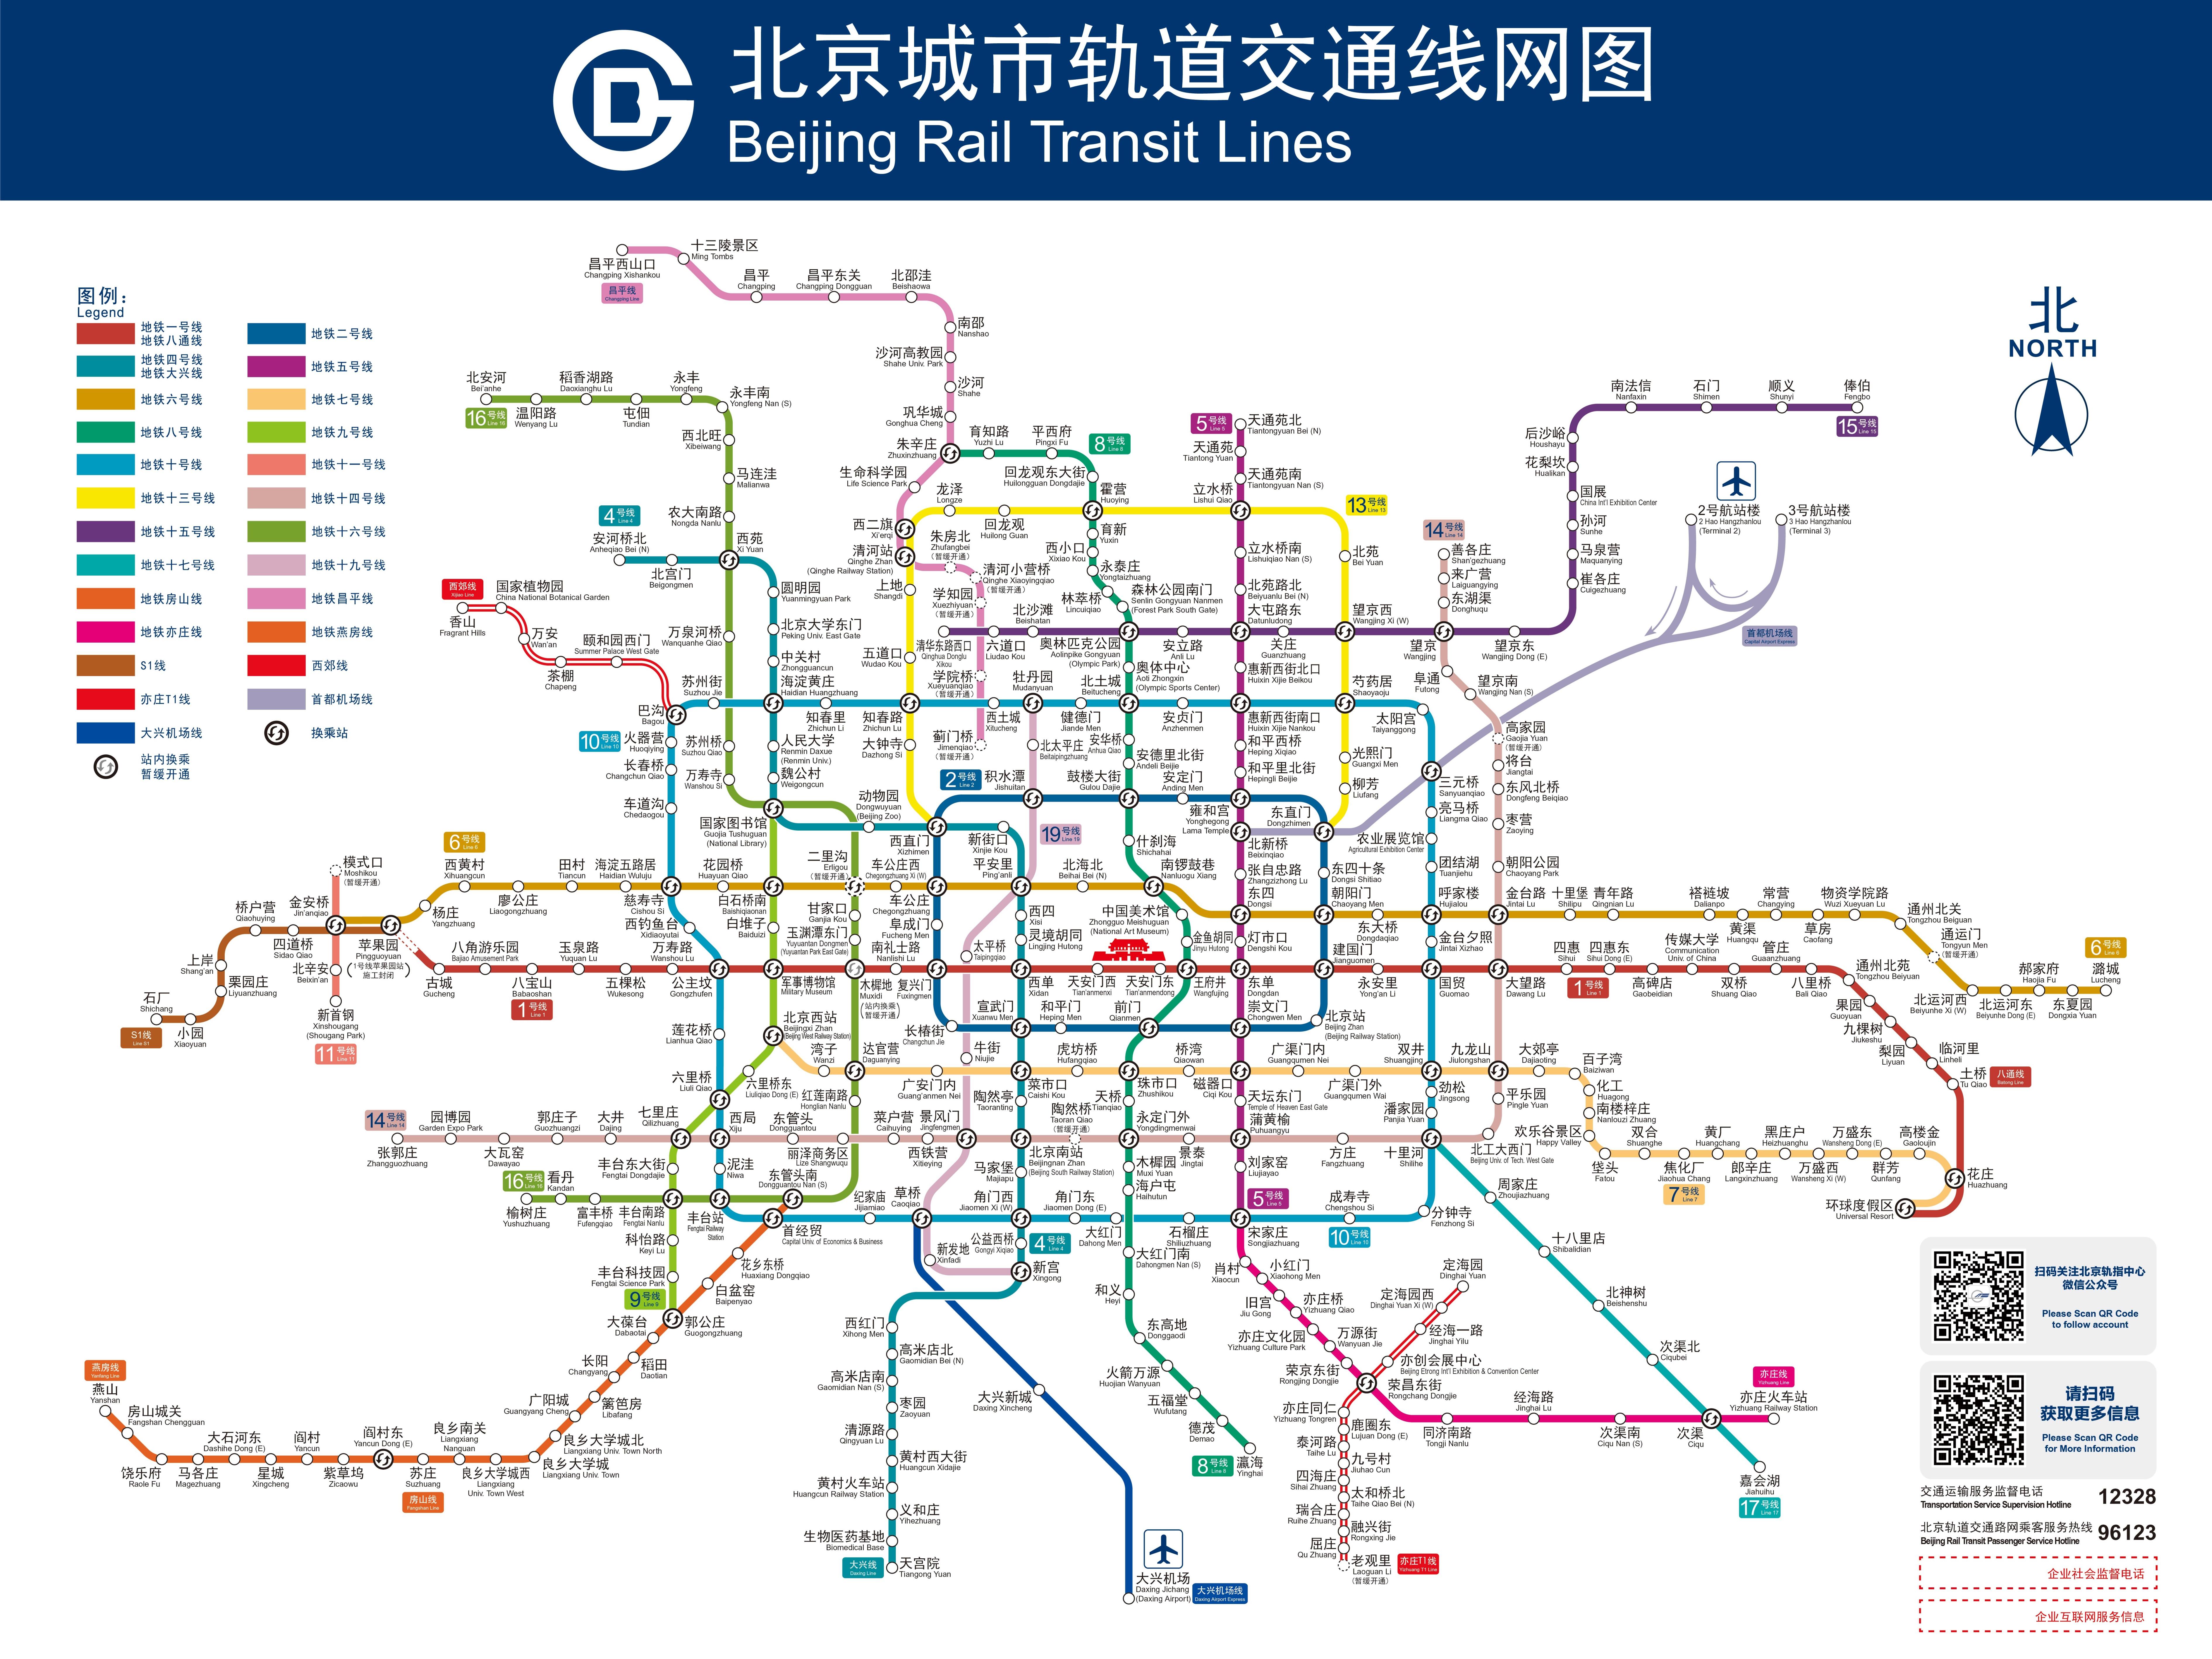 北京地铁线路图 北京地铁线路图下载